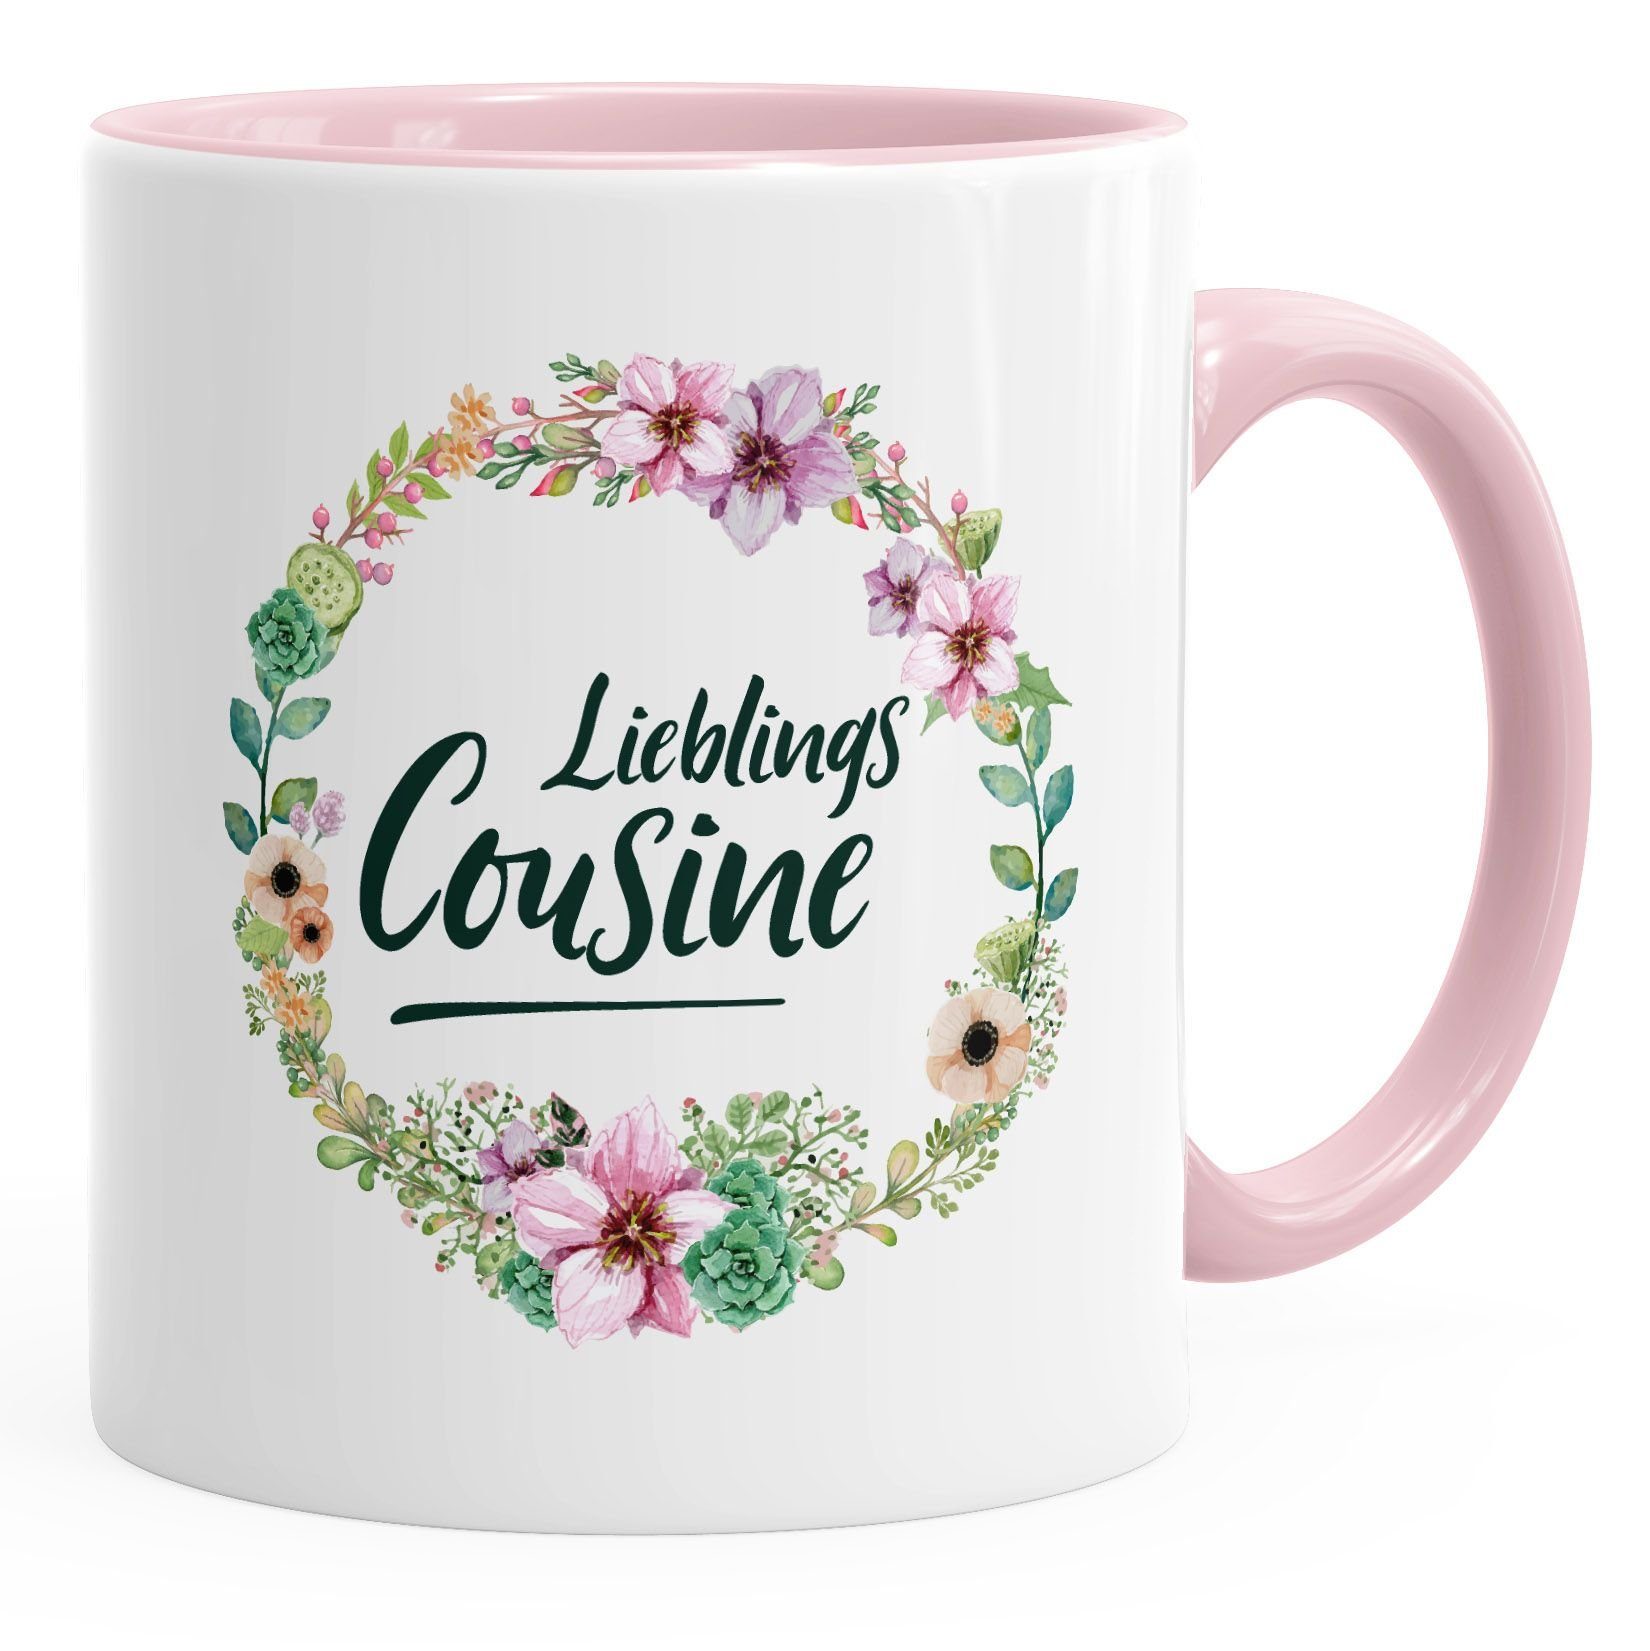 MoonWorks Tasse Kaffee-Tasse Geschenktasse Geschenk für Cousine Lieblingscousine Blumen Bordüre Blumenranke Blüten Familie MoonWorks®, Keramik rosa